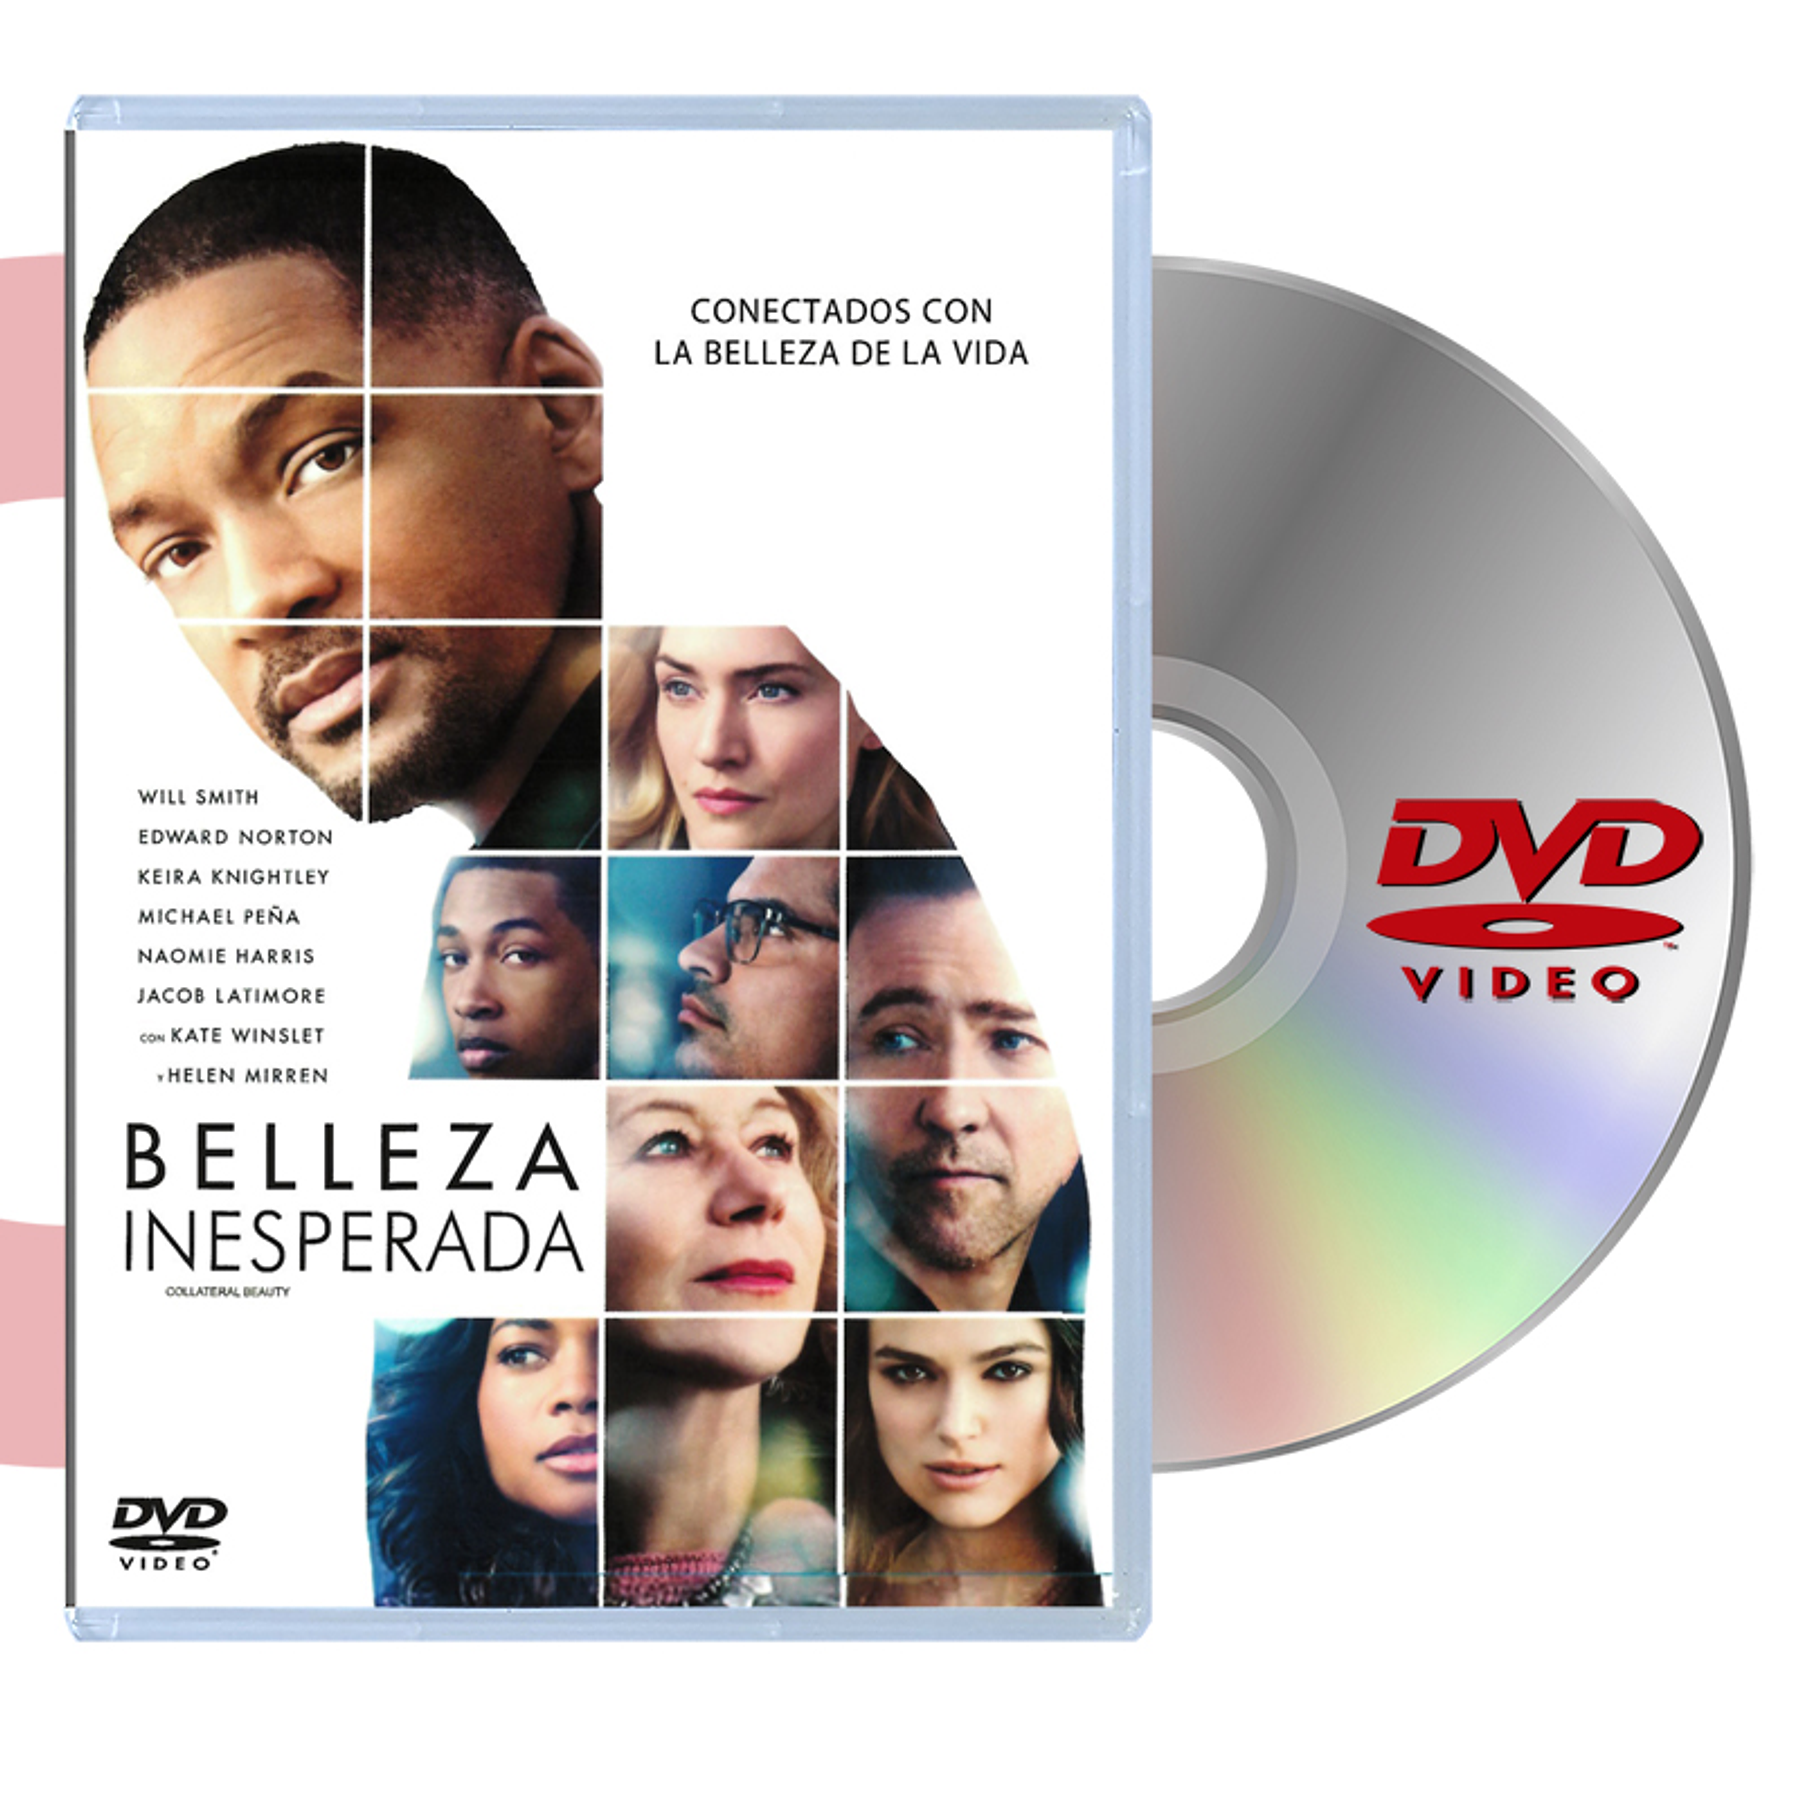 DVD BELLEZA INESPERADA